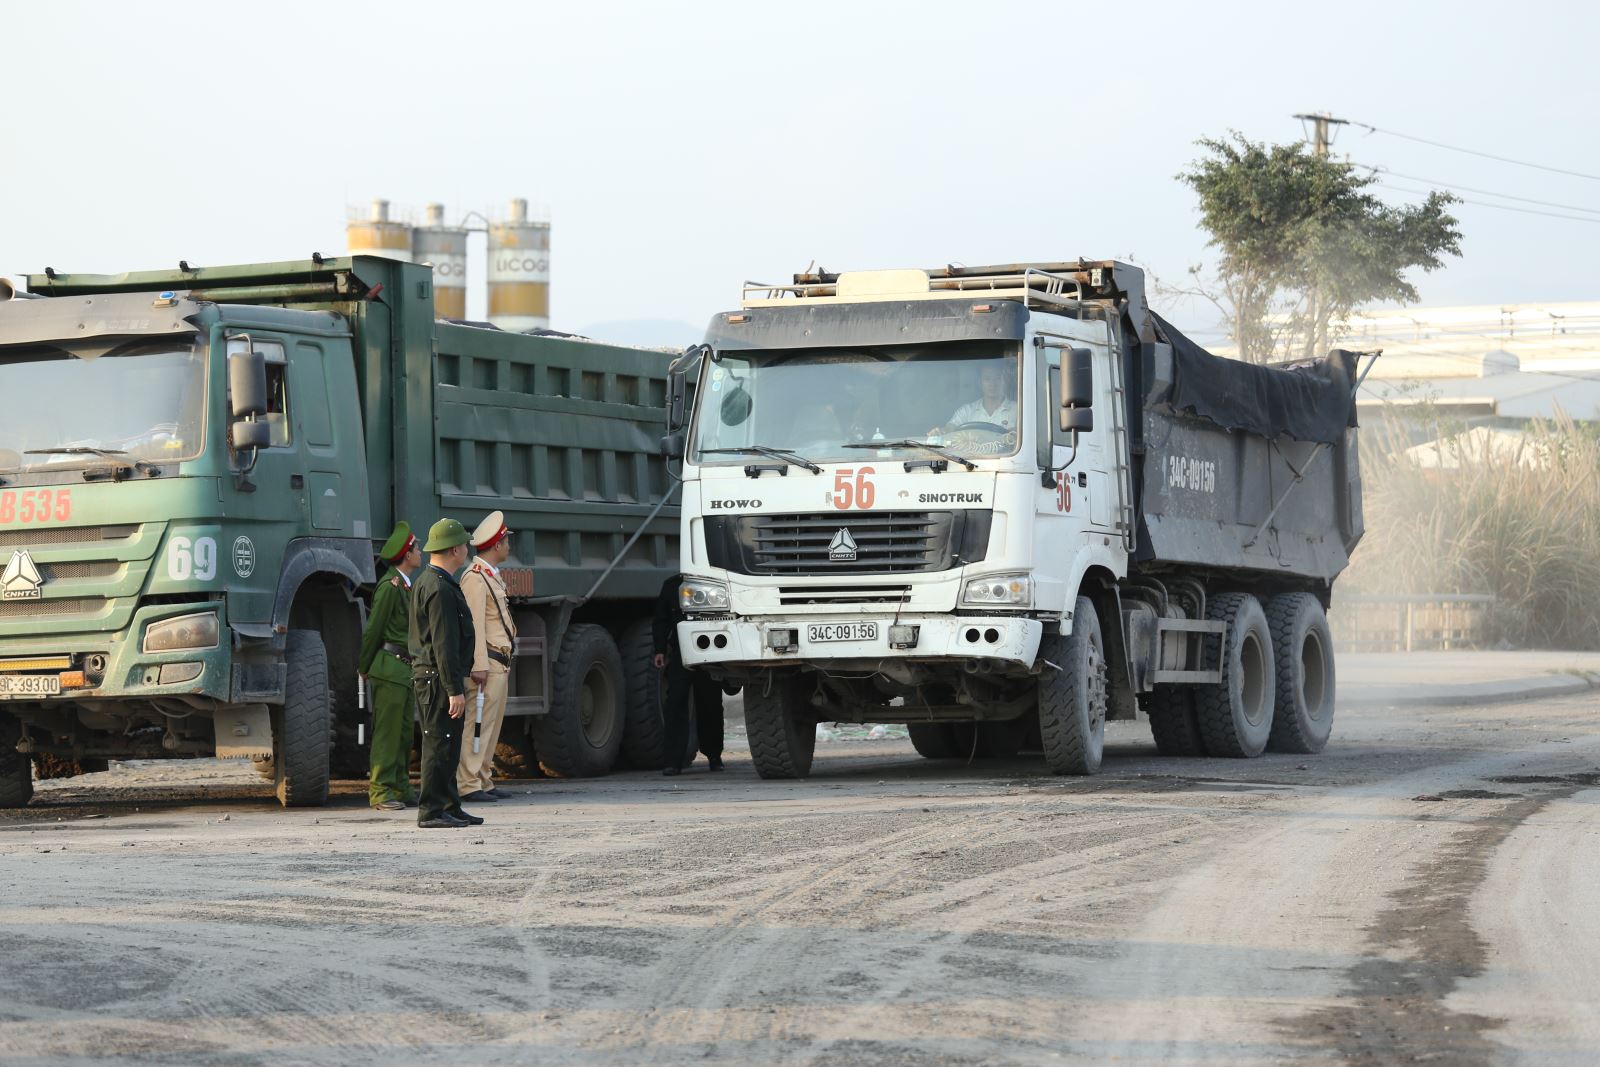 Ngay sau phản ánh của phóng viên VOV Đông Bắc, thành phố Hạ Long đã ra quân quyết liệt xử lý tình trạng xe quá tải, cơi nới thành thùng chạy trên các tuyến đường cấm của thành phố.